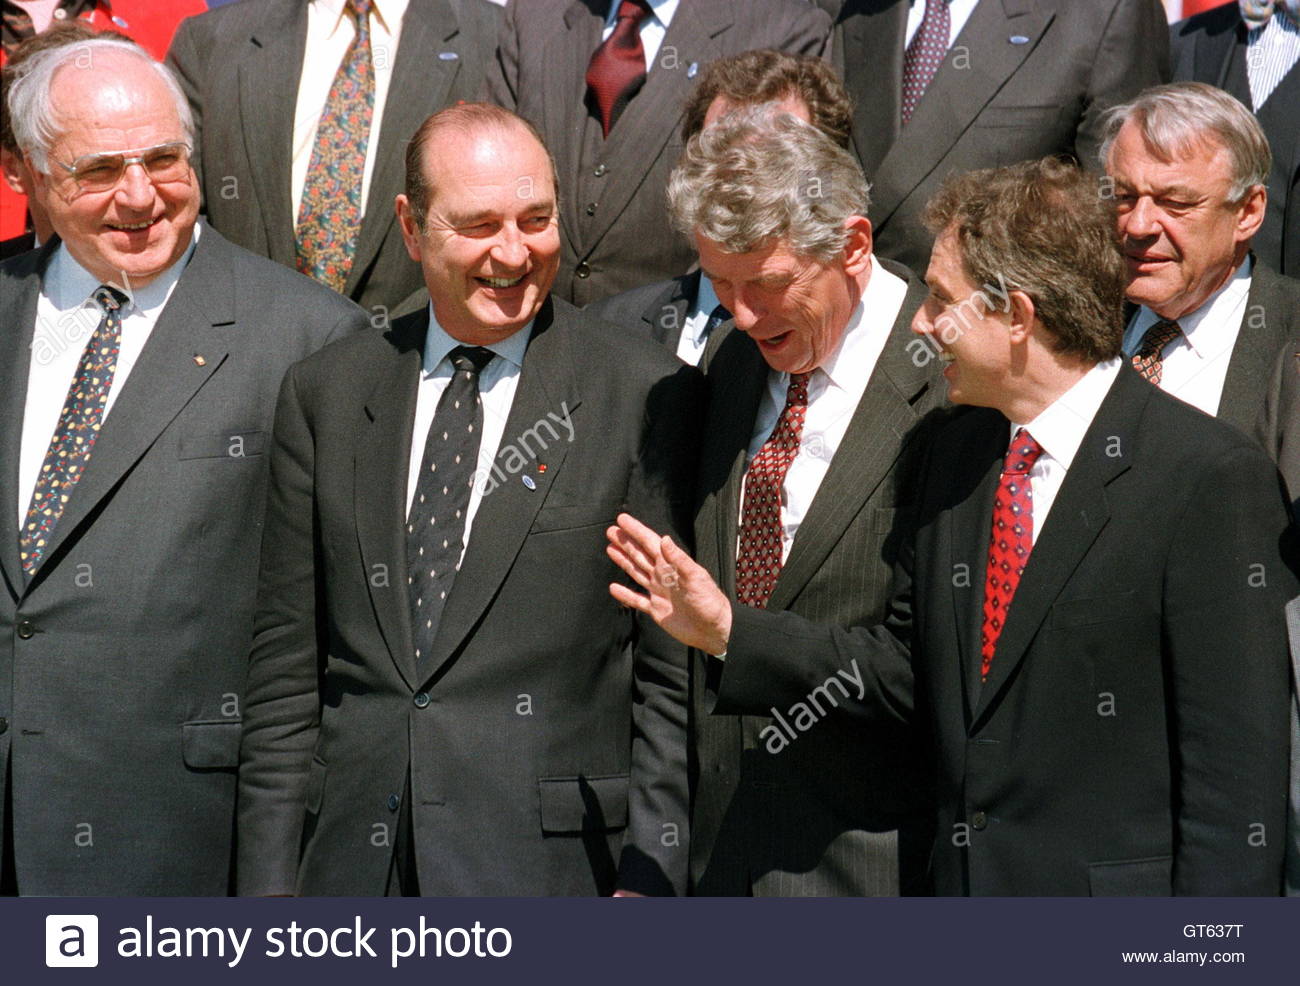 Αποτέλεσμα εικόνας για Helmut Kohl photo gallery